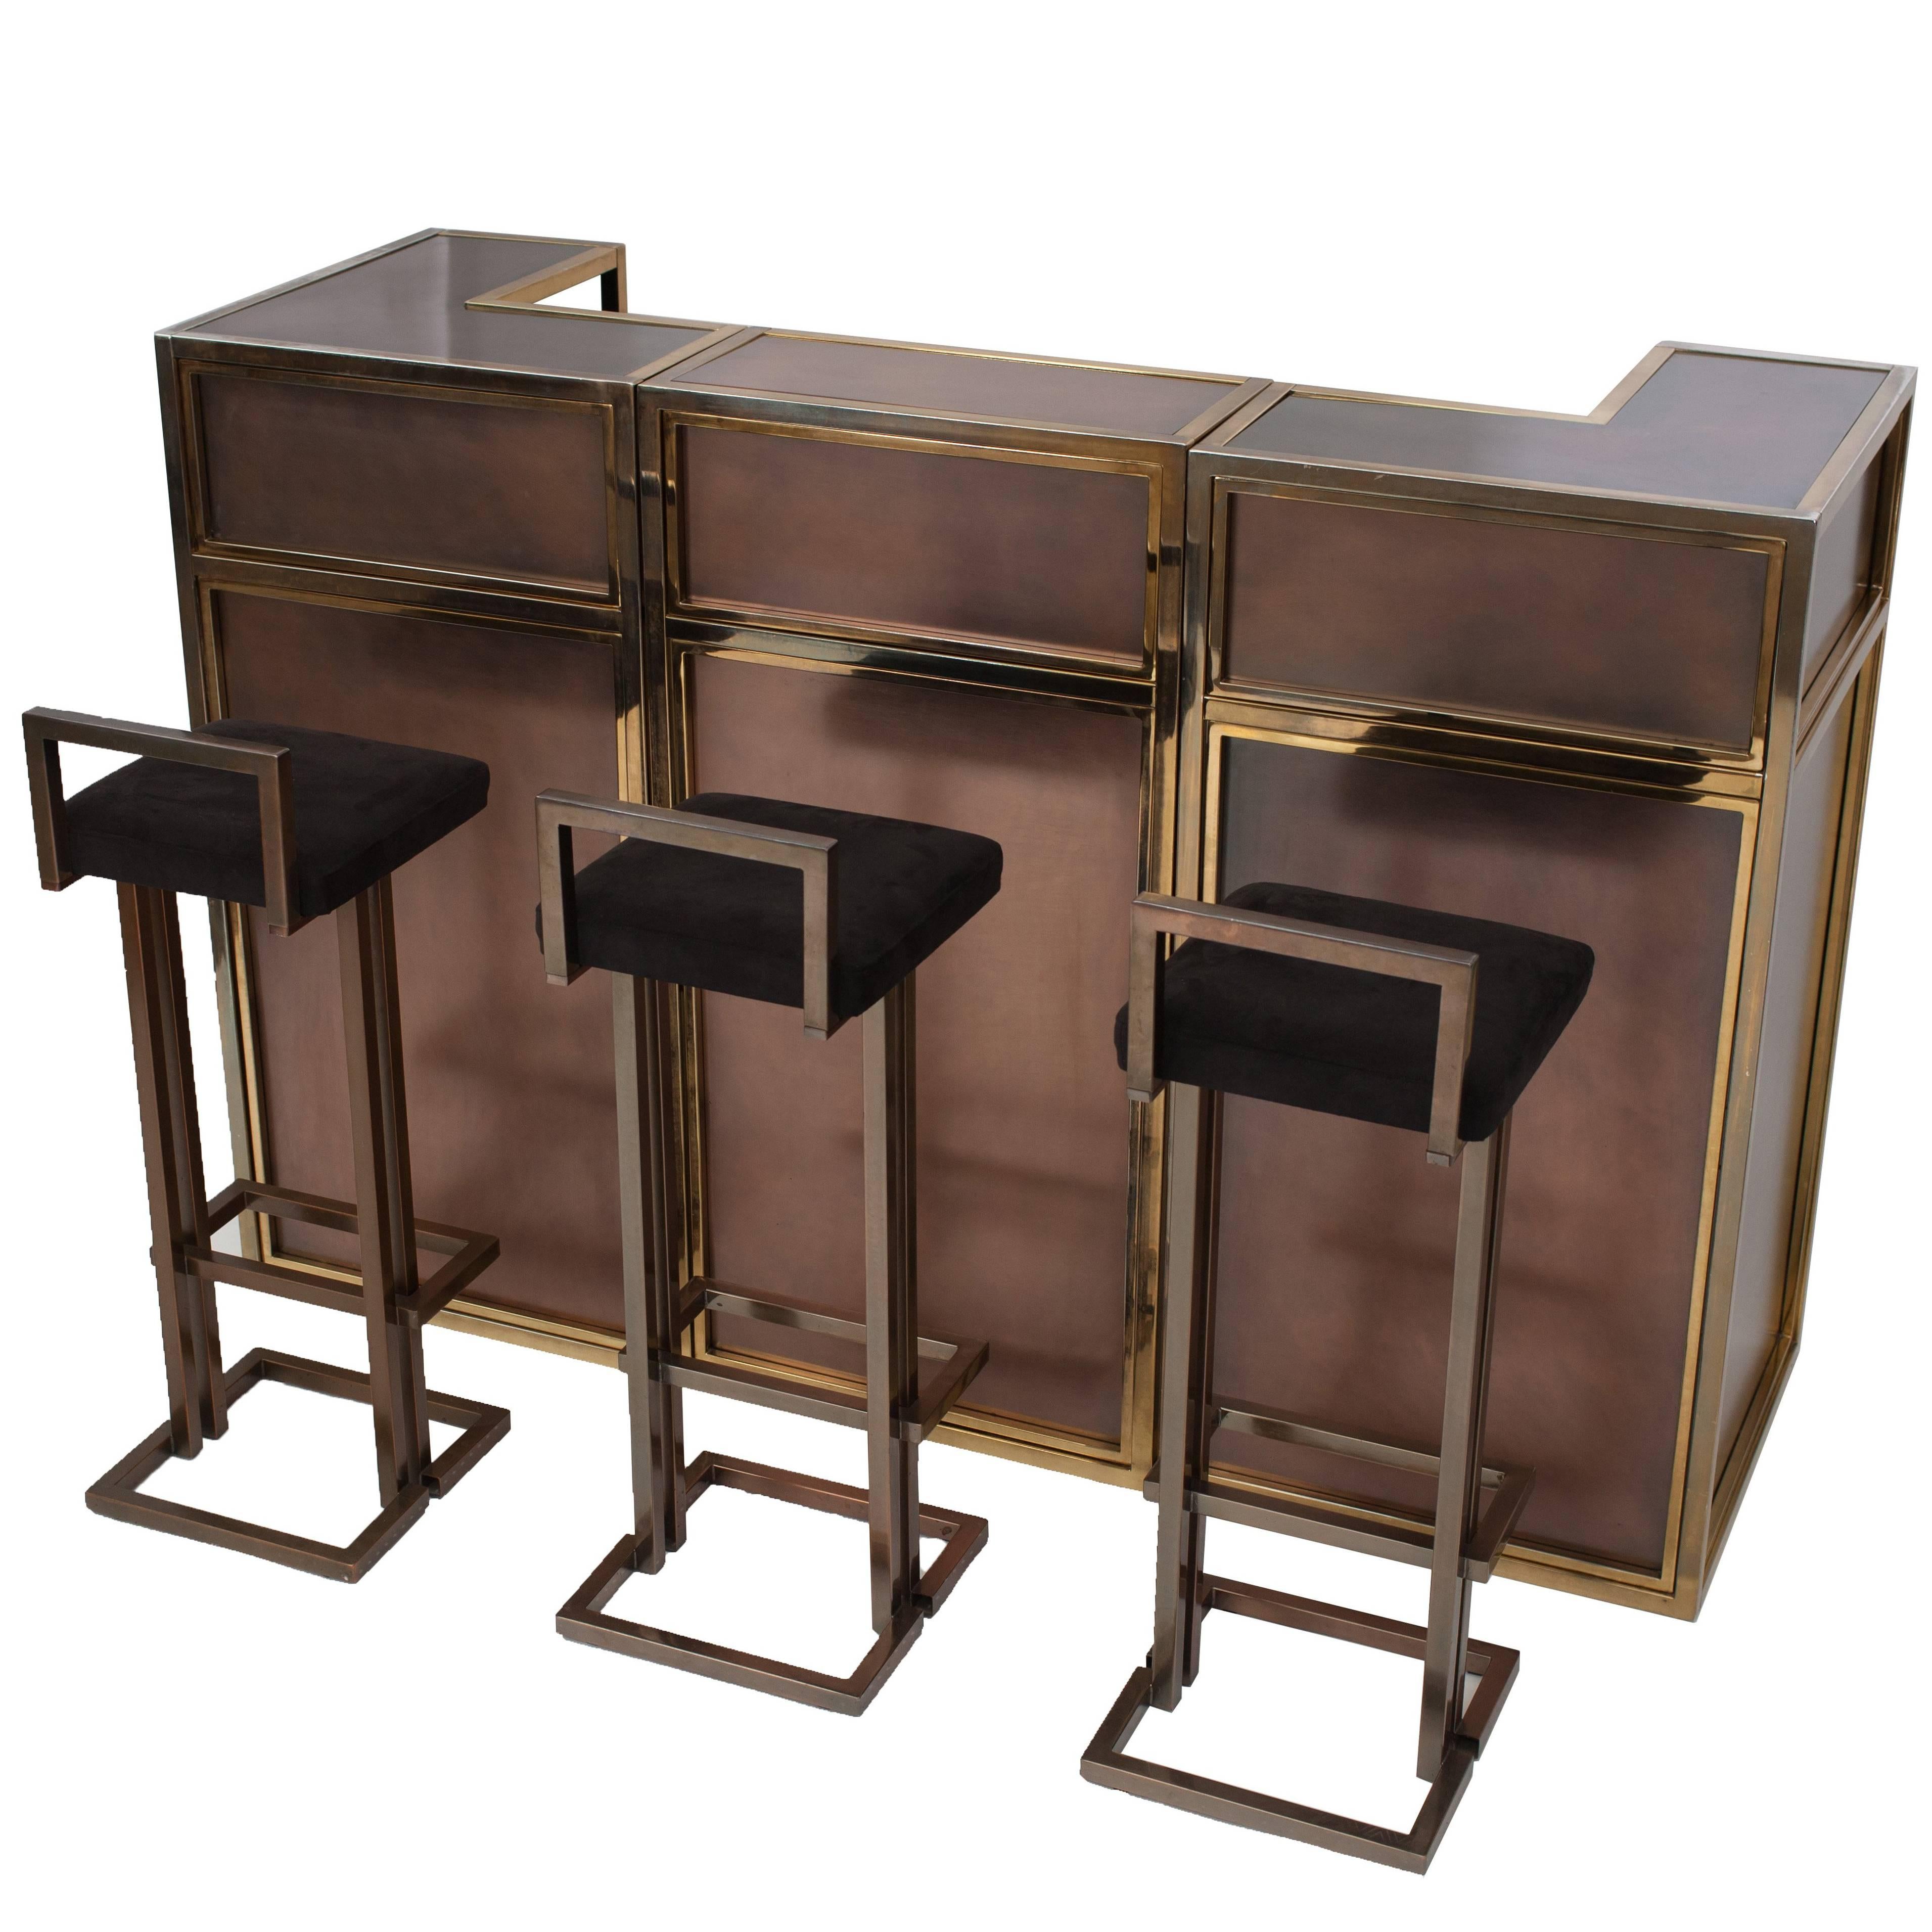 Maison Jansen Copper and Brass Bar Counter